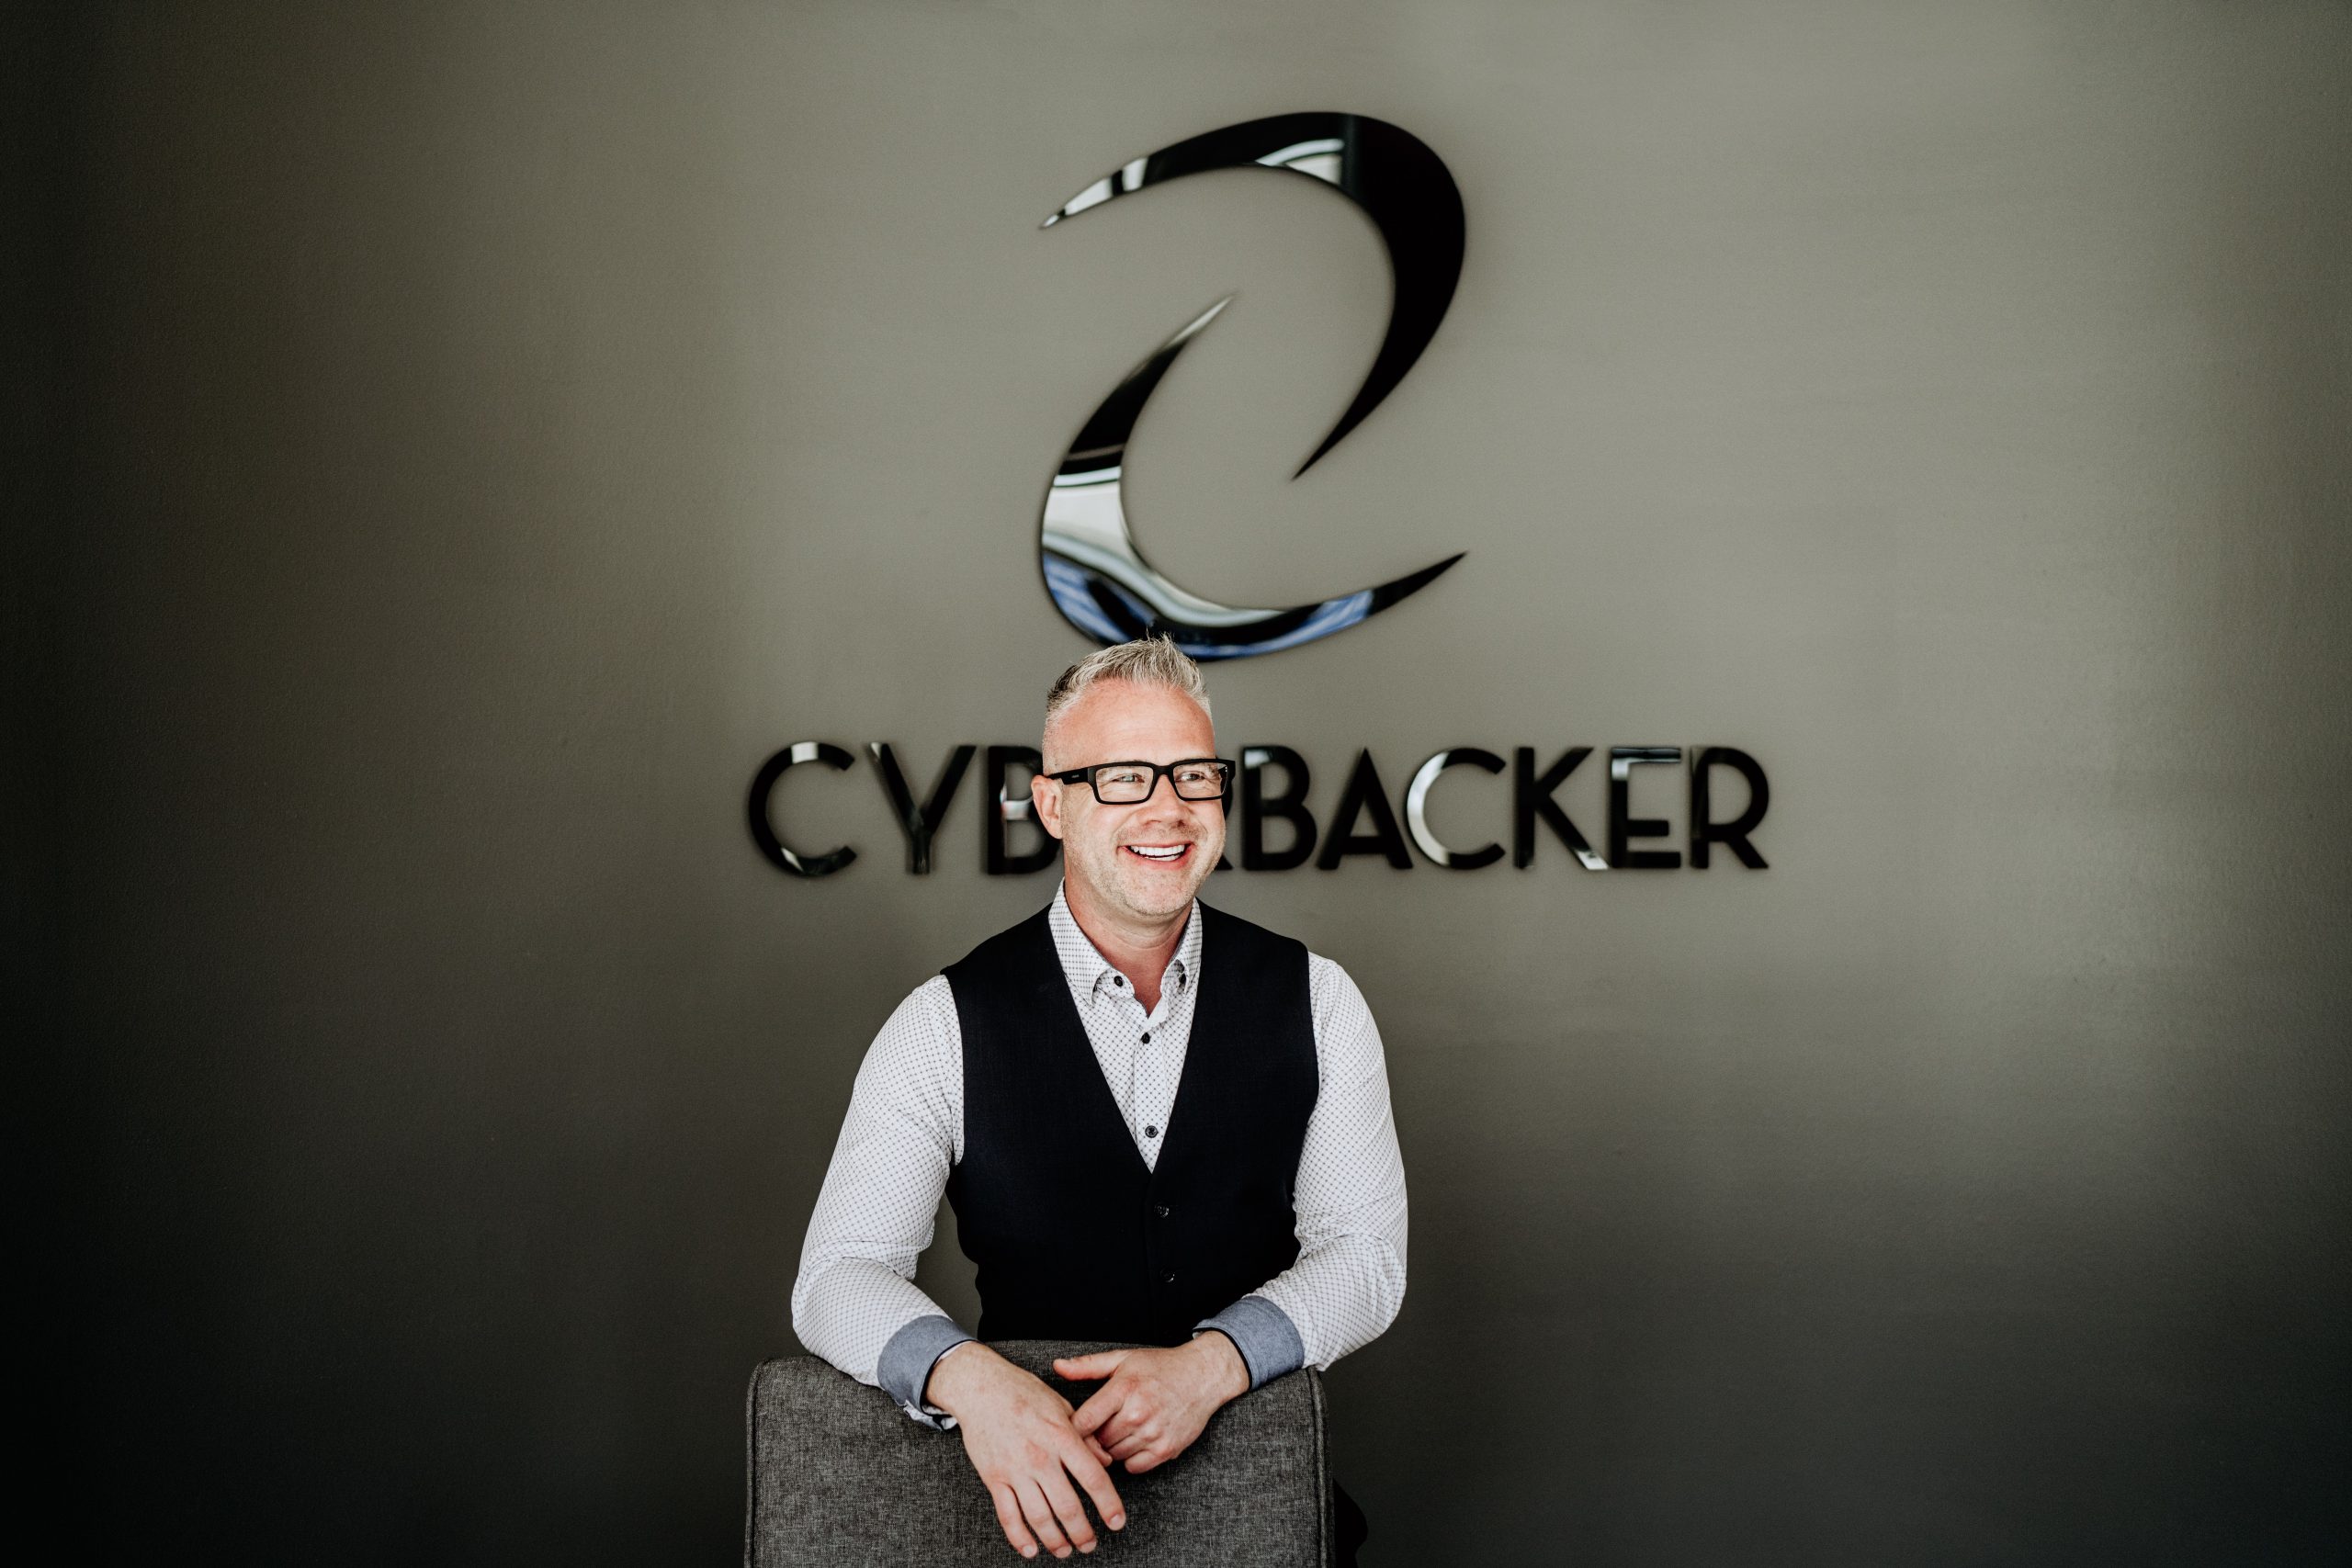 Craig Goodliffe Cyberbacker CEO